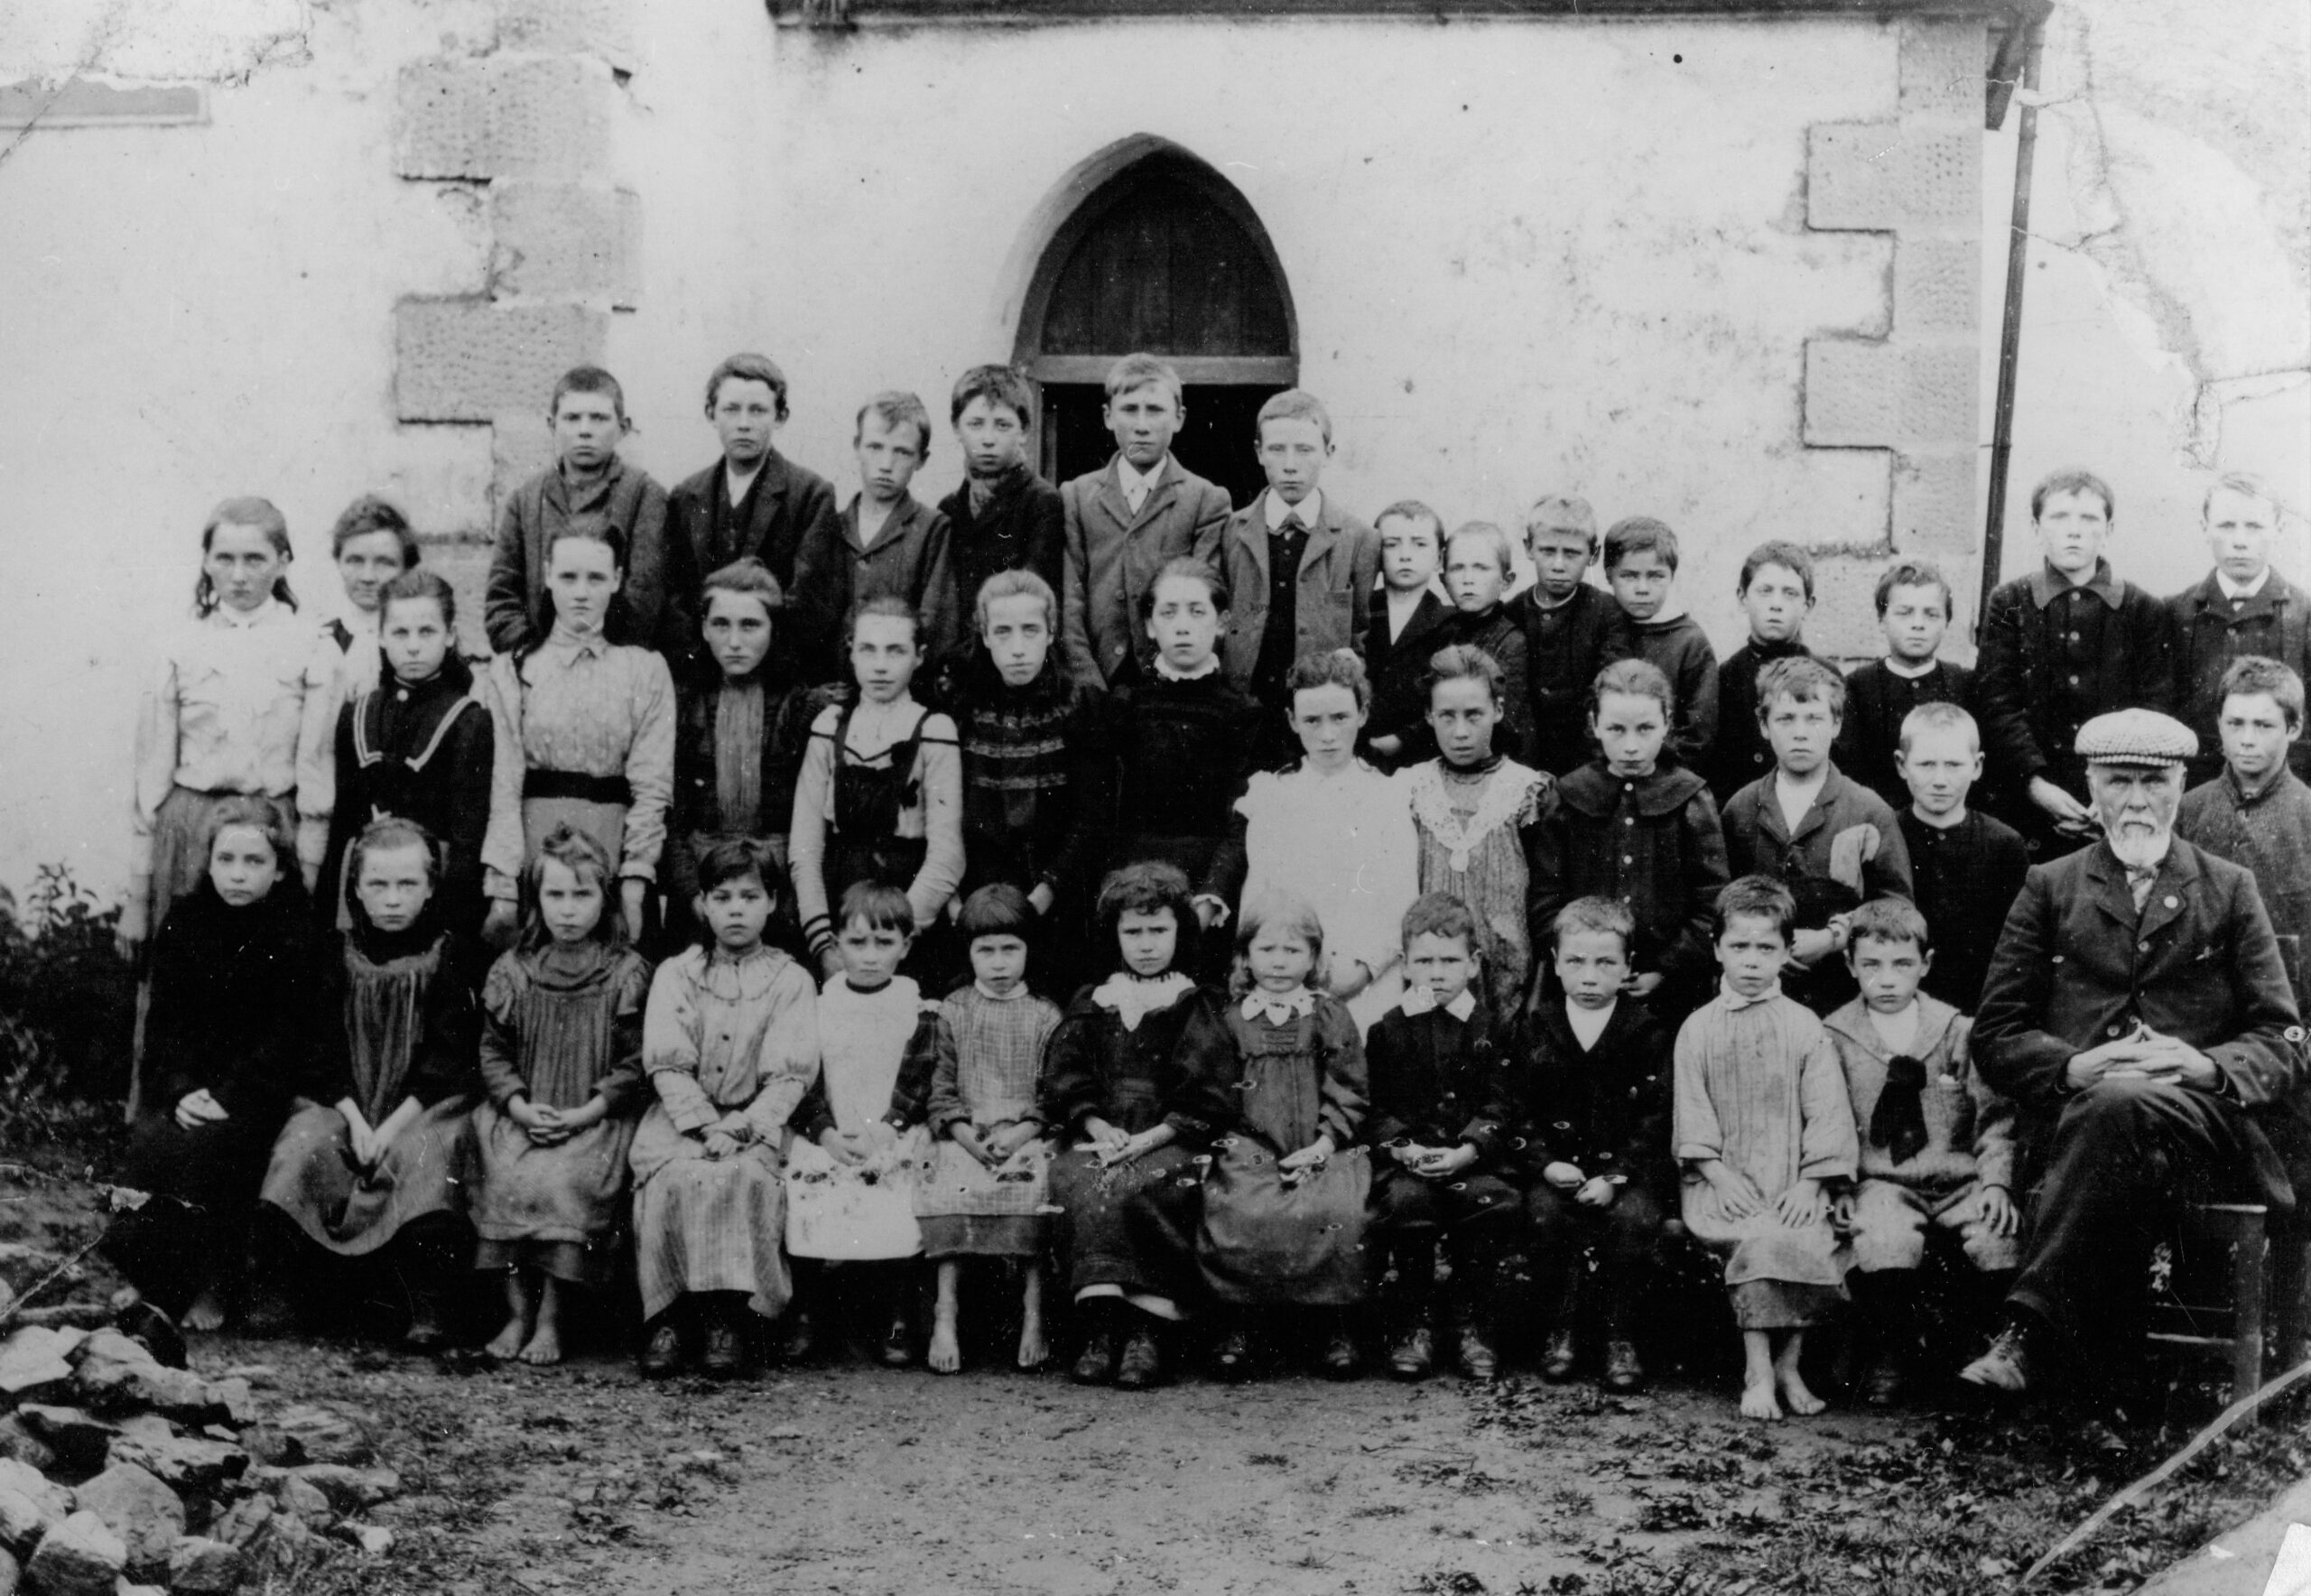 Glenshesk School, Ballycastle, c1902-1905.